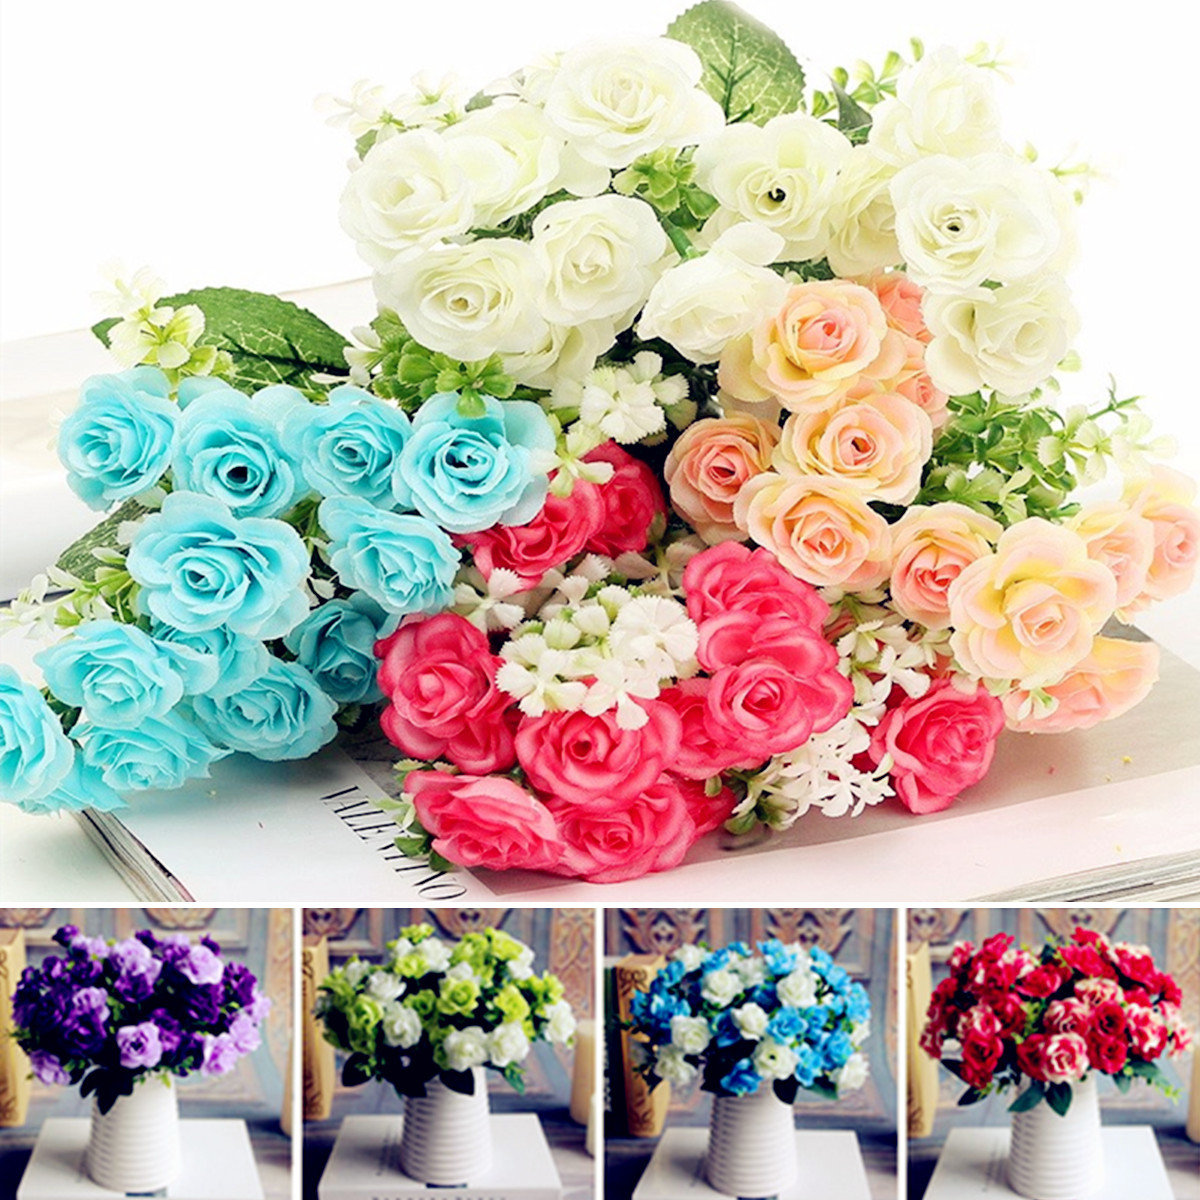 

15 Head Artificial Silk Rose Flower Decoration Bouquet, Blue deep pink cream pink